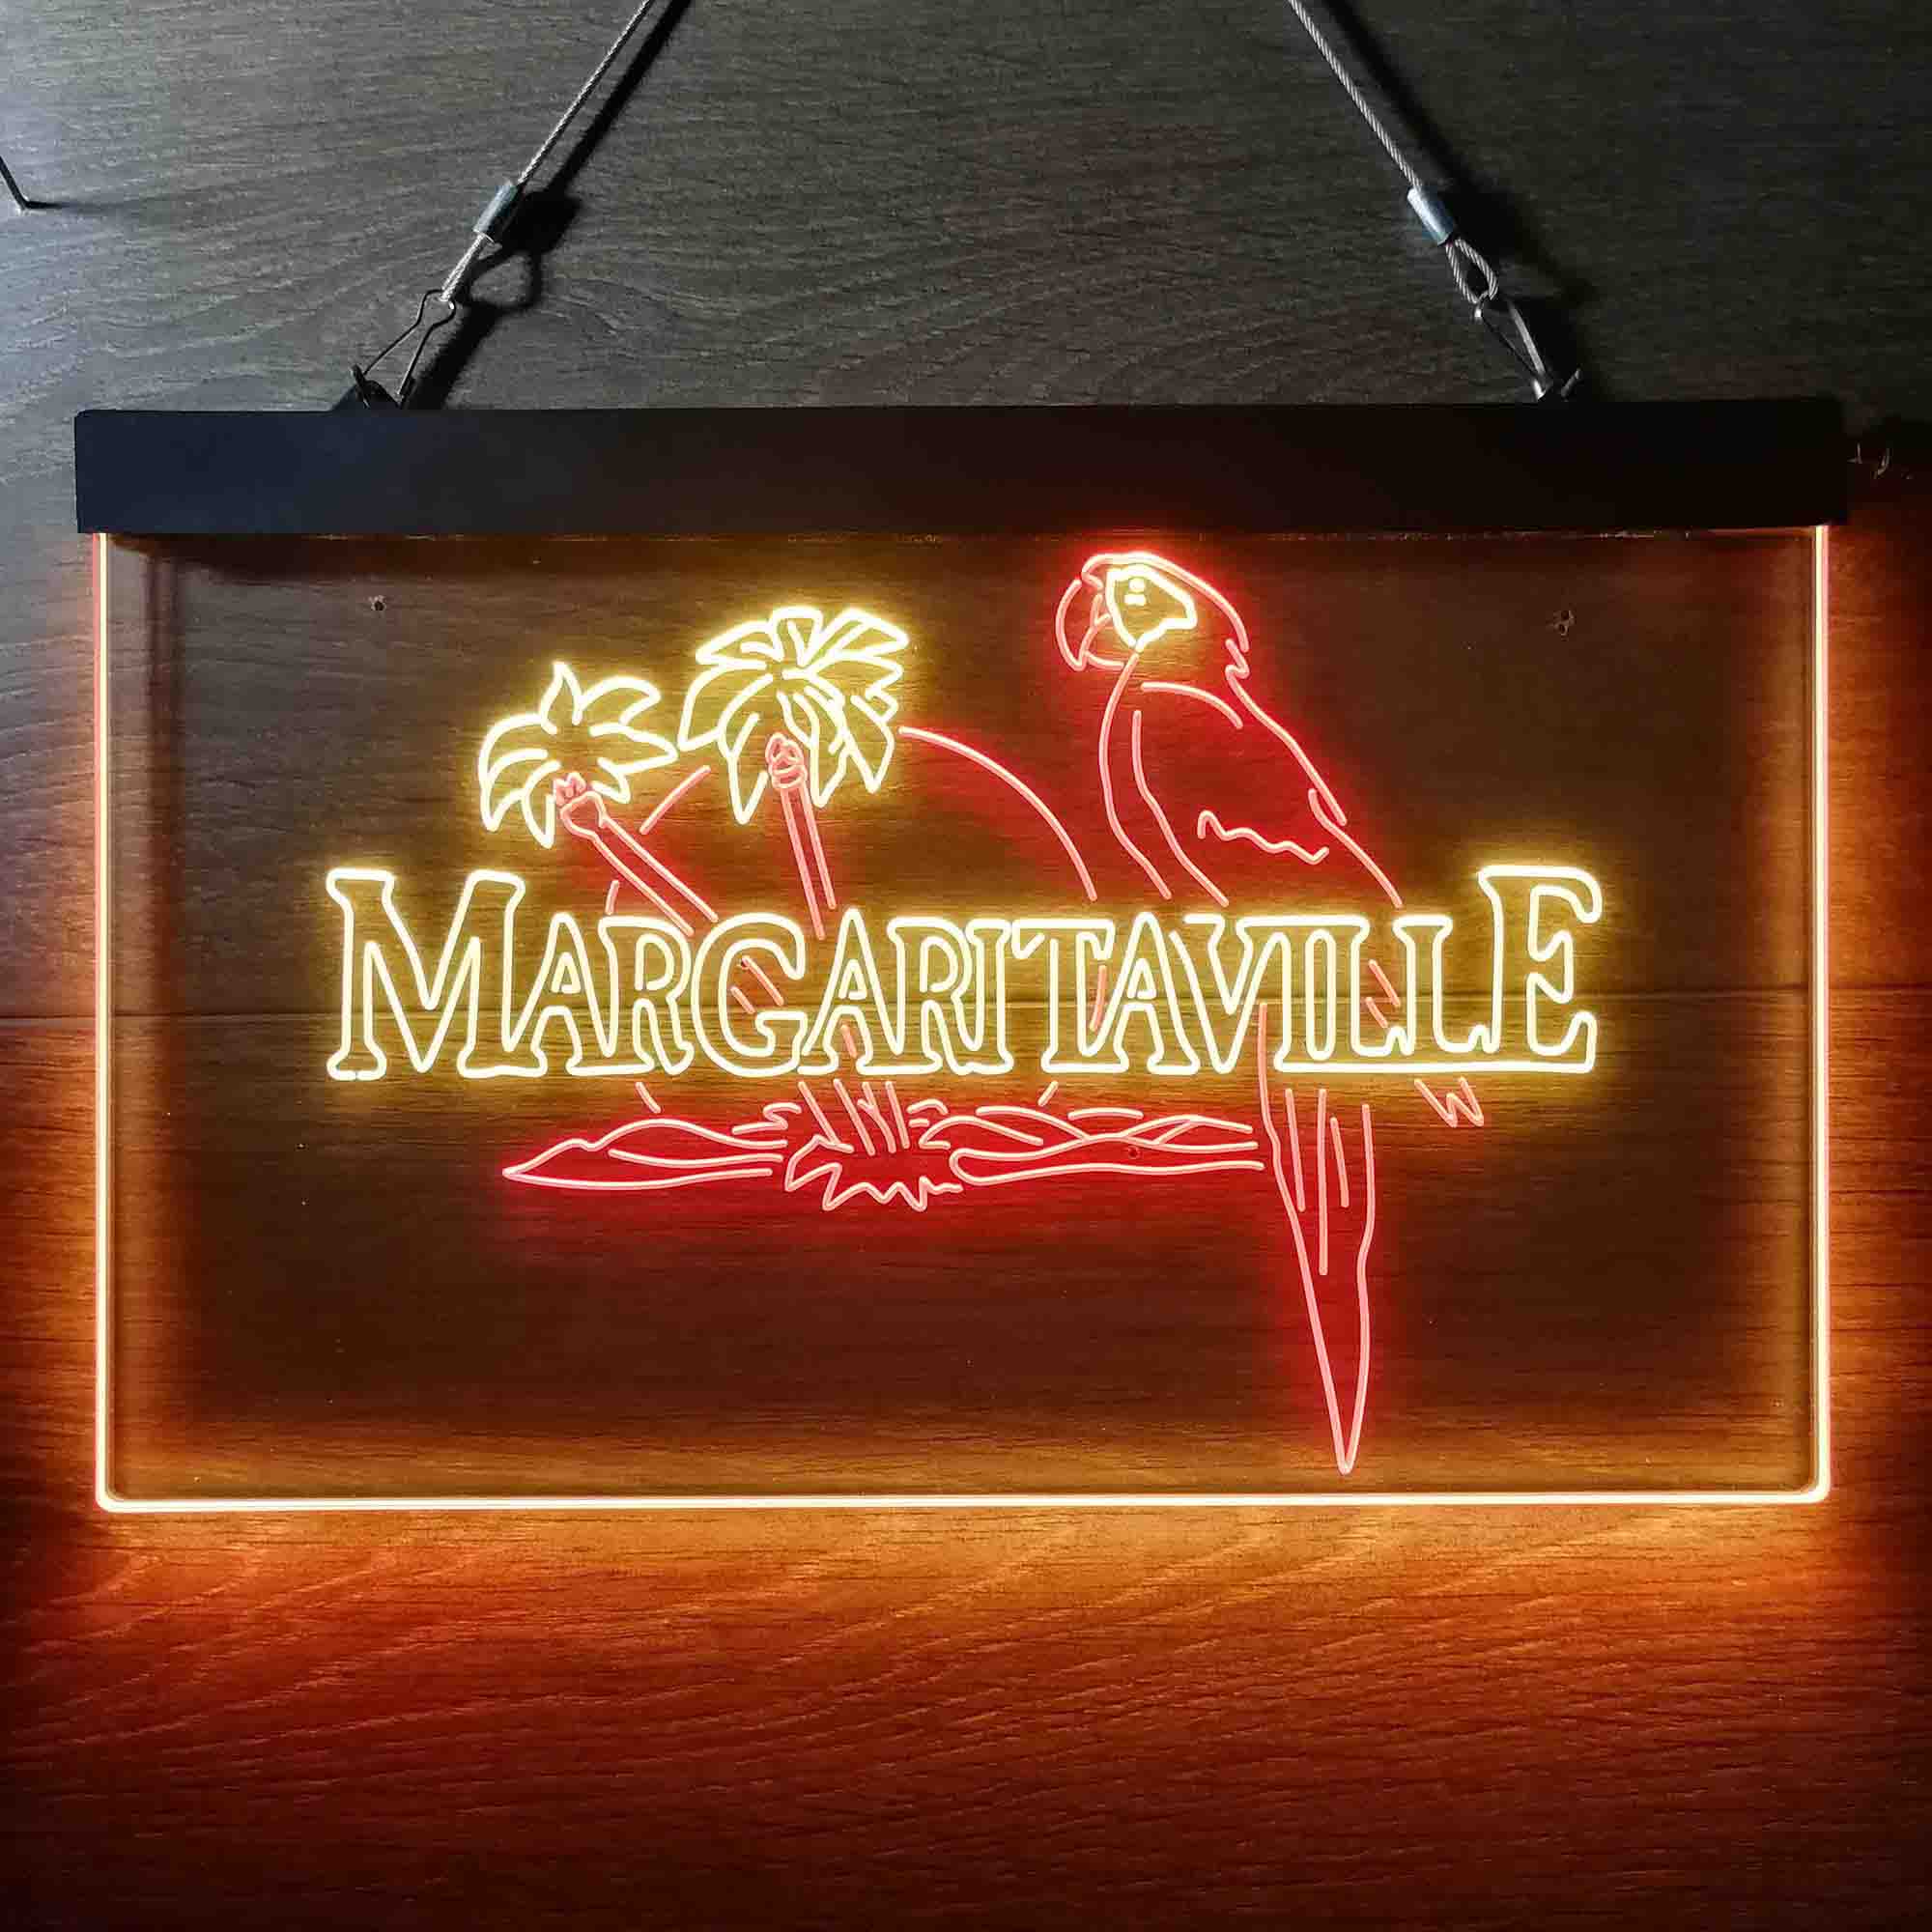 Jimmy Buffett's Margaritaville Parrot Neon LED Sign